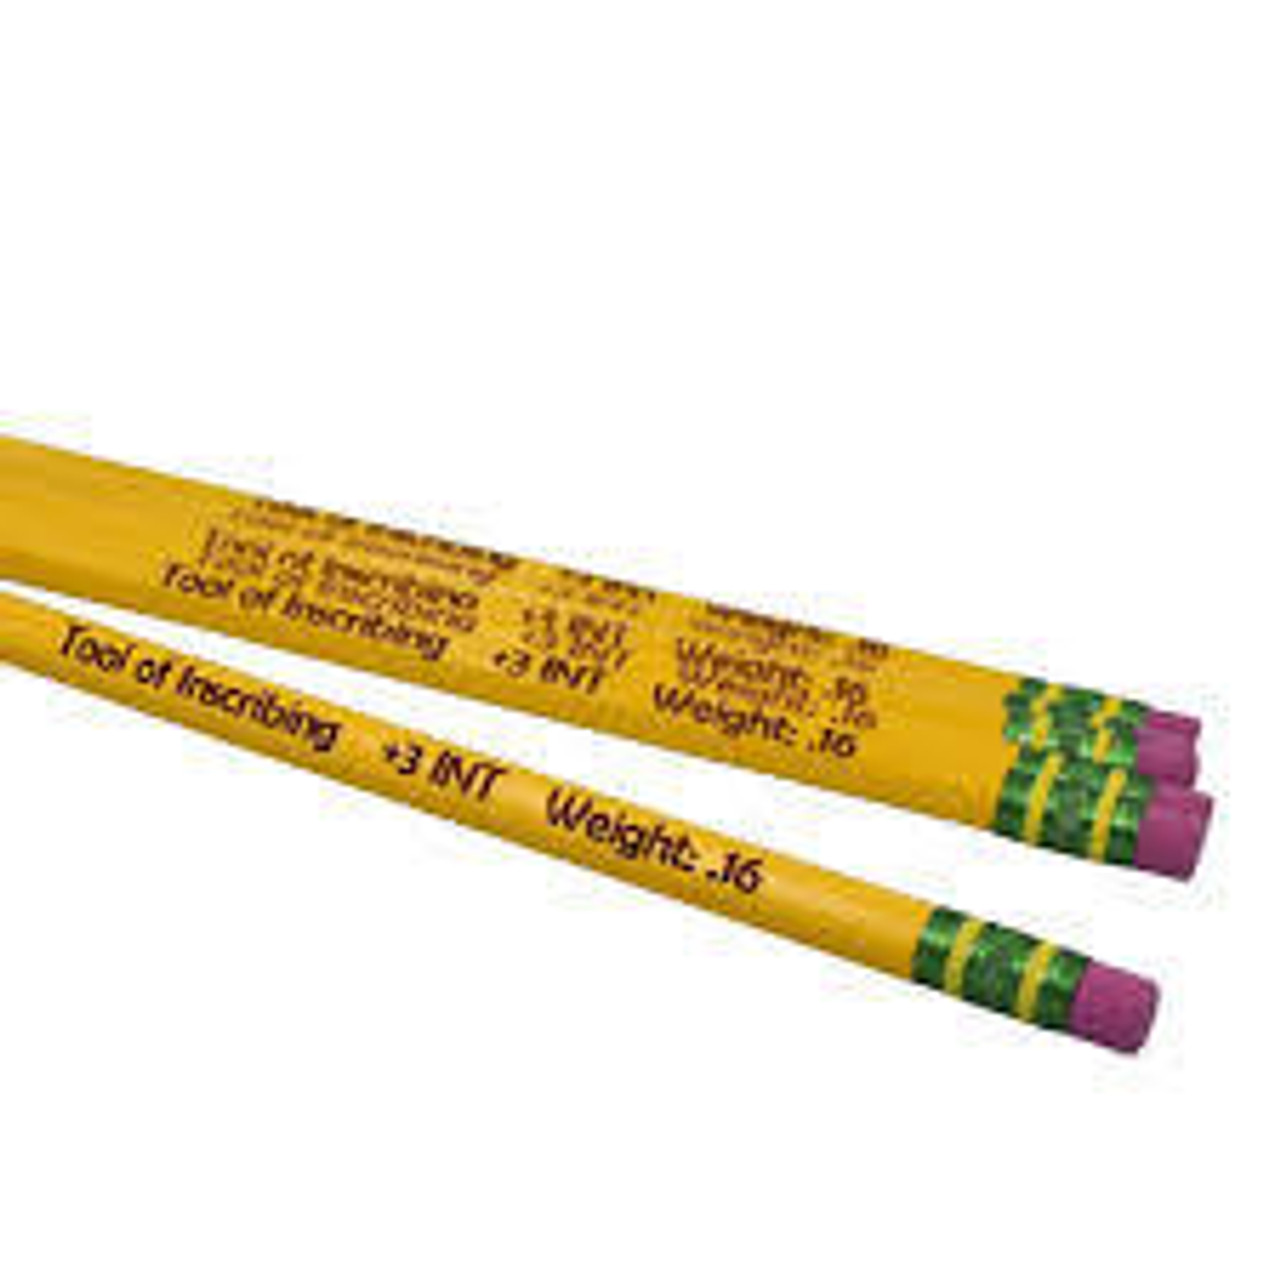 General Pencil - The Original Charcoal Drawing Pencil Set - Sam Flax Atlanta